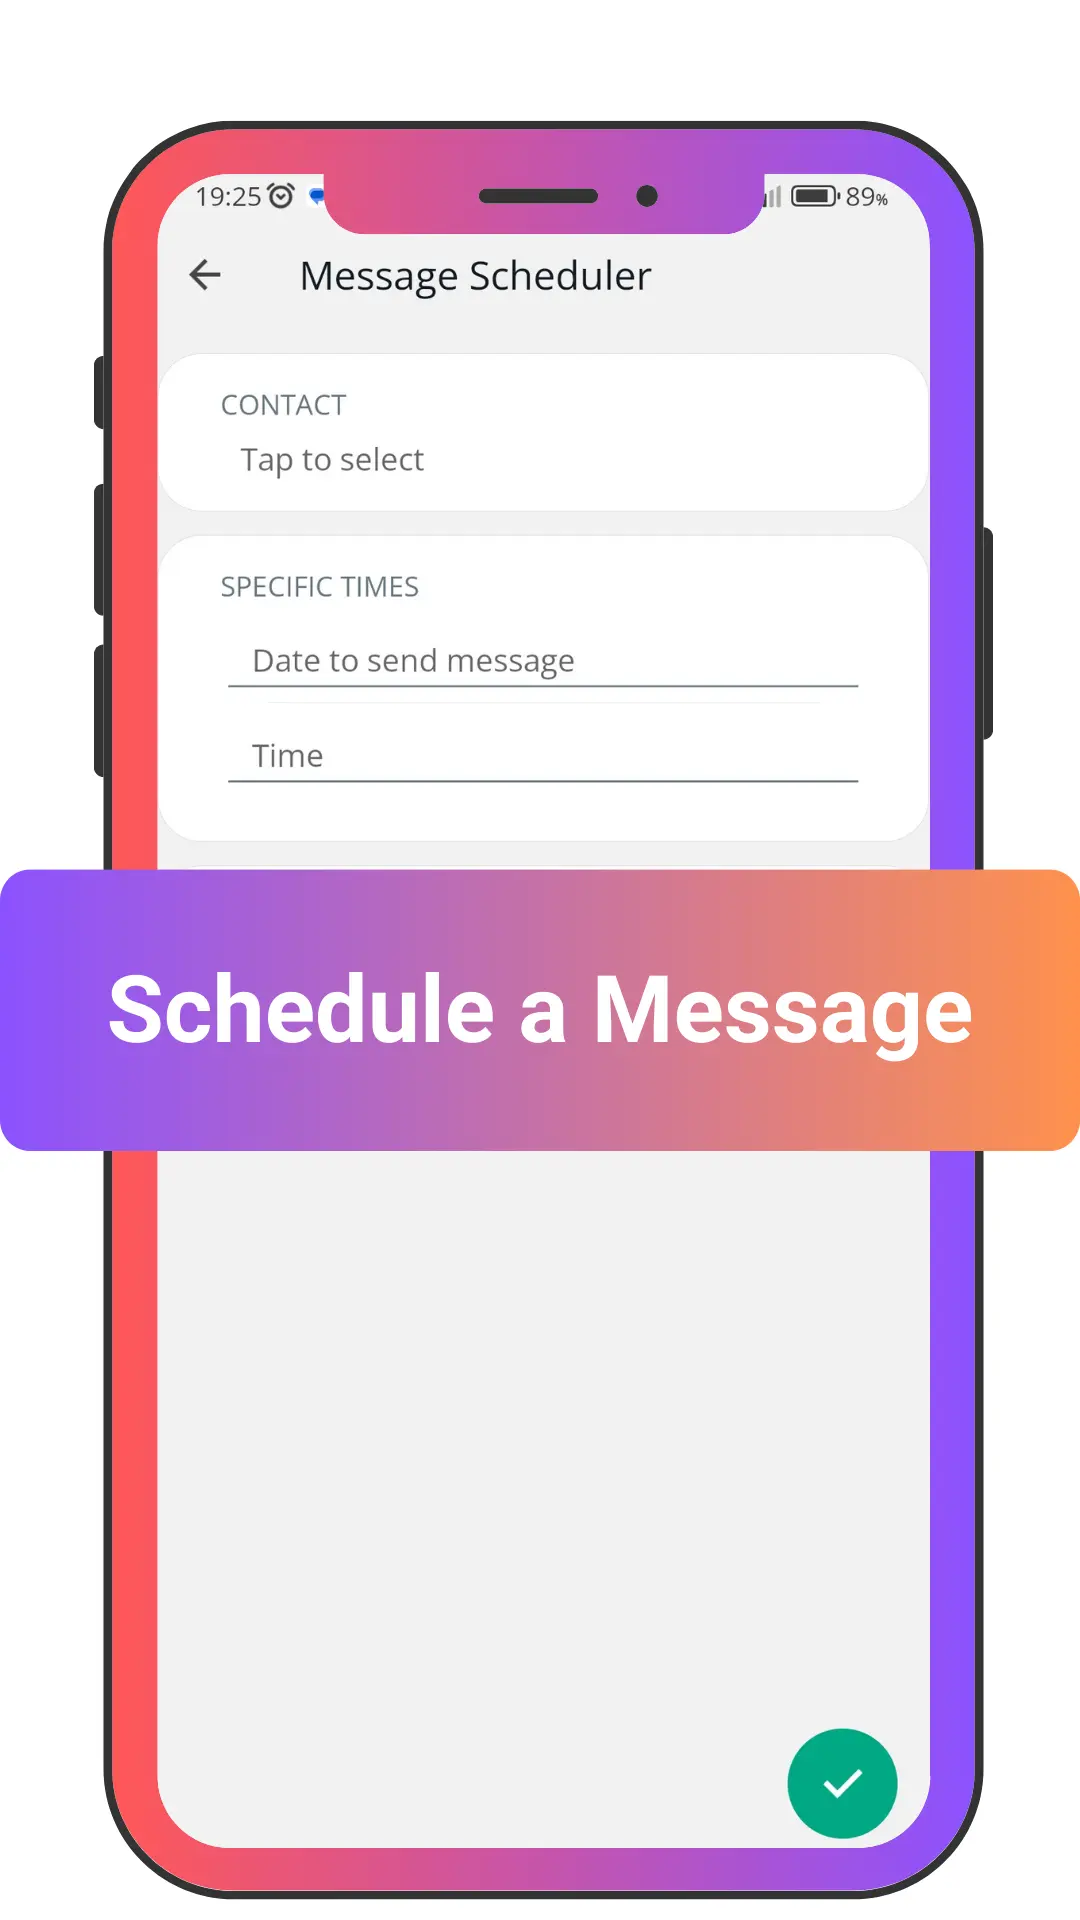 Schedule a Message